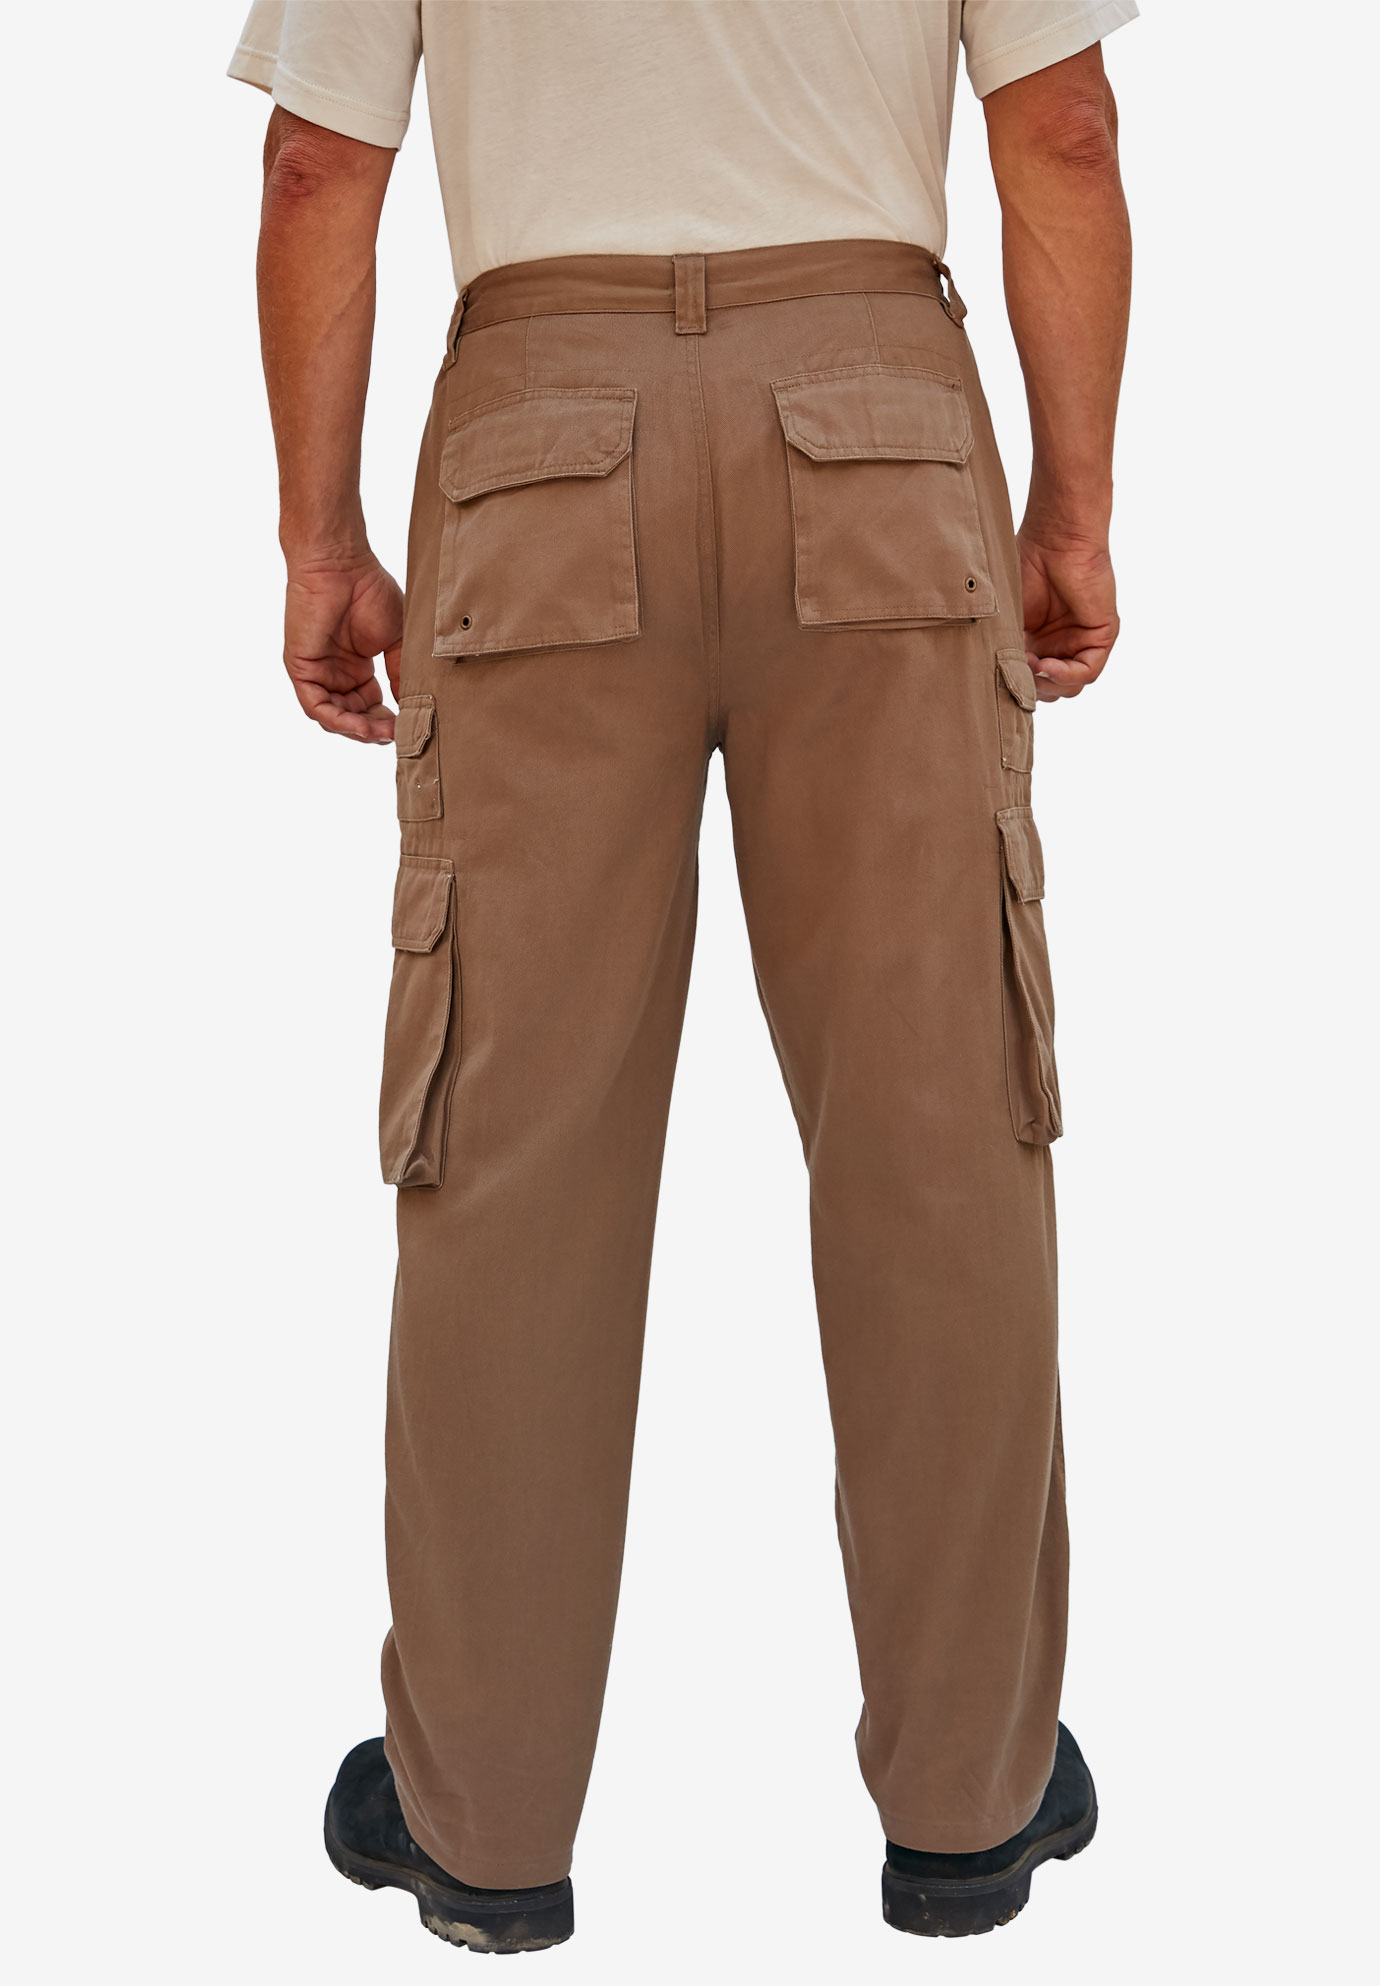 Boulder Creek By Kingsize Men's Big & Tall  Side-Elastic Stacked Cargo Pocket Pants - image 3 of 6